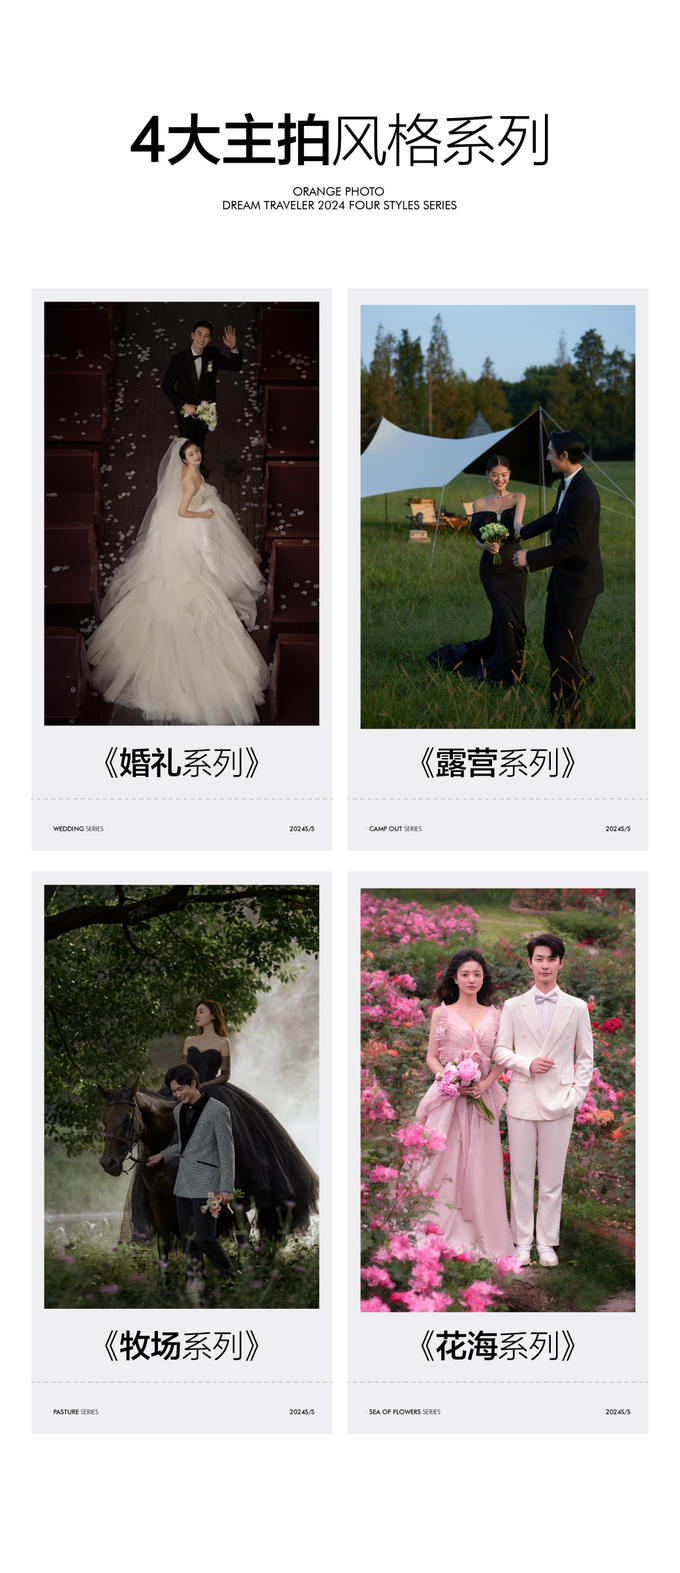 限时拍摄·特惠套餐·上海婚纱照